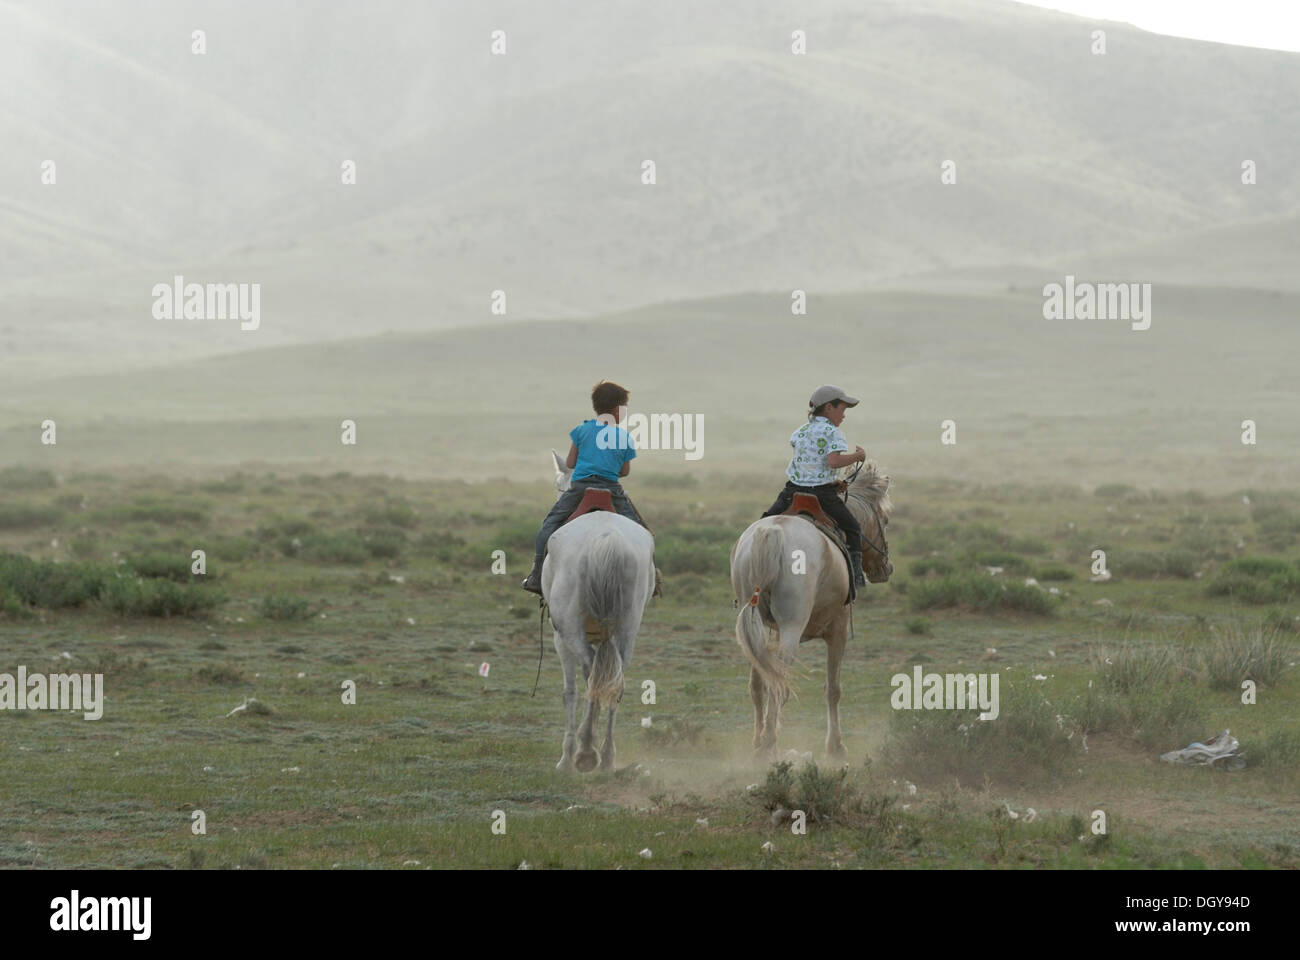 Deux petits enfants mongols, les garçons dans la circonscription de pelouses sèches sur les chevaux de Mongolie blanc, Lun, Toev Aimak, Mongolie, Asie Banque D'Images